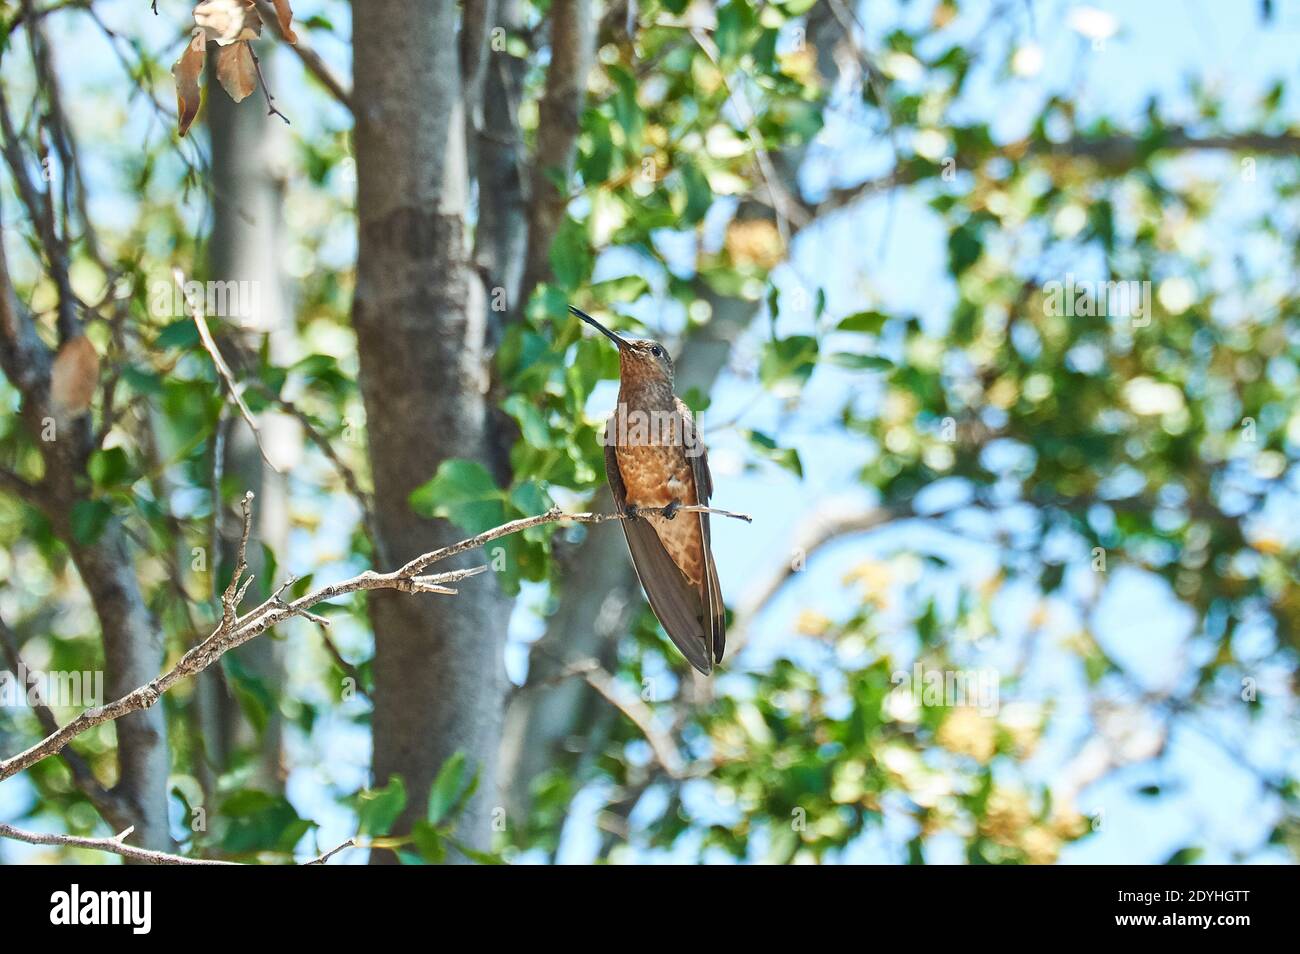 Santiago, Santiago, Chile. Dezember 2020. Der KOLIBRI (Patagona gigas). Sie ist die größte aller Kolibris in Chile und erreicht eine Länge von etwa 23 Zentimetern. Seine oberen Teile sind gräulich braun mit einem metallisch-grünen Glanz und der Schwanz ist weiß. Dieser Kolibri lebt in semi-ariden Umgebungen und ernährt sich vom Nektar der Blumen, die er finden kann, und auch von kleinen Insekten. Der Kolibri ist Zugvogel und im Frühjahr und Sommer häufig von der Antofagasta Region nach ARAUCANÃ-a Credit: Francisco Arias/ZUMA Wire/Alamy Live News Stockfoto